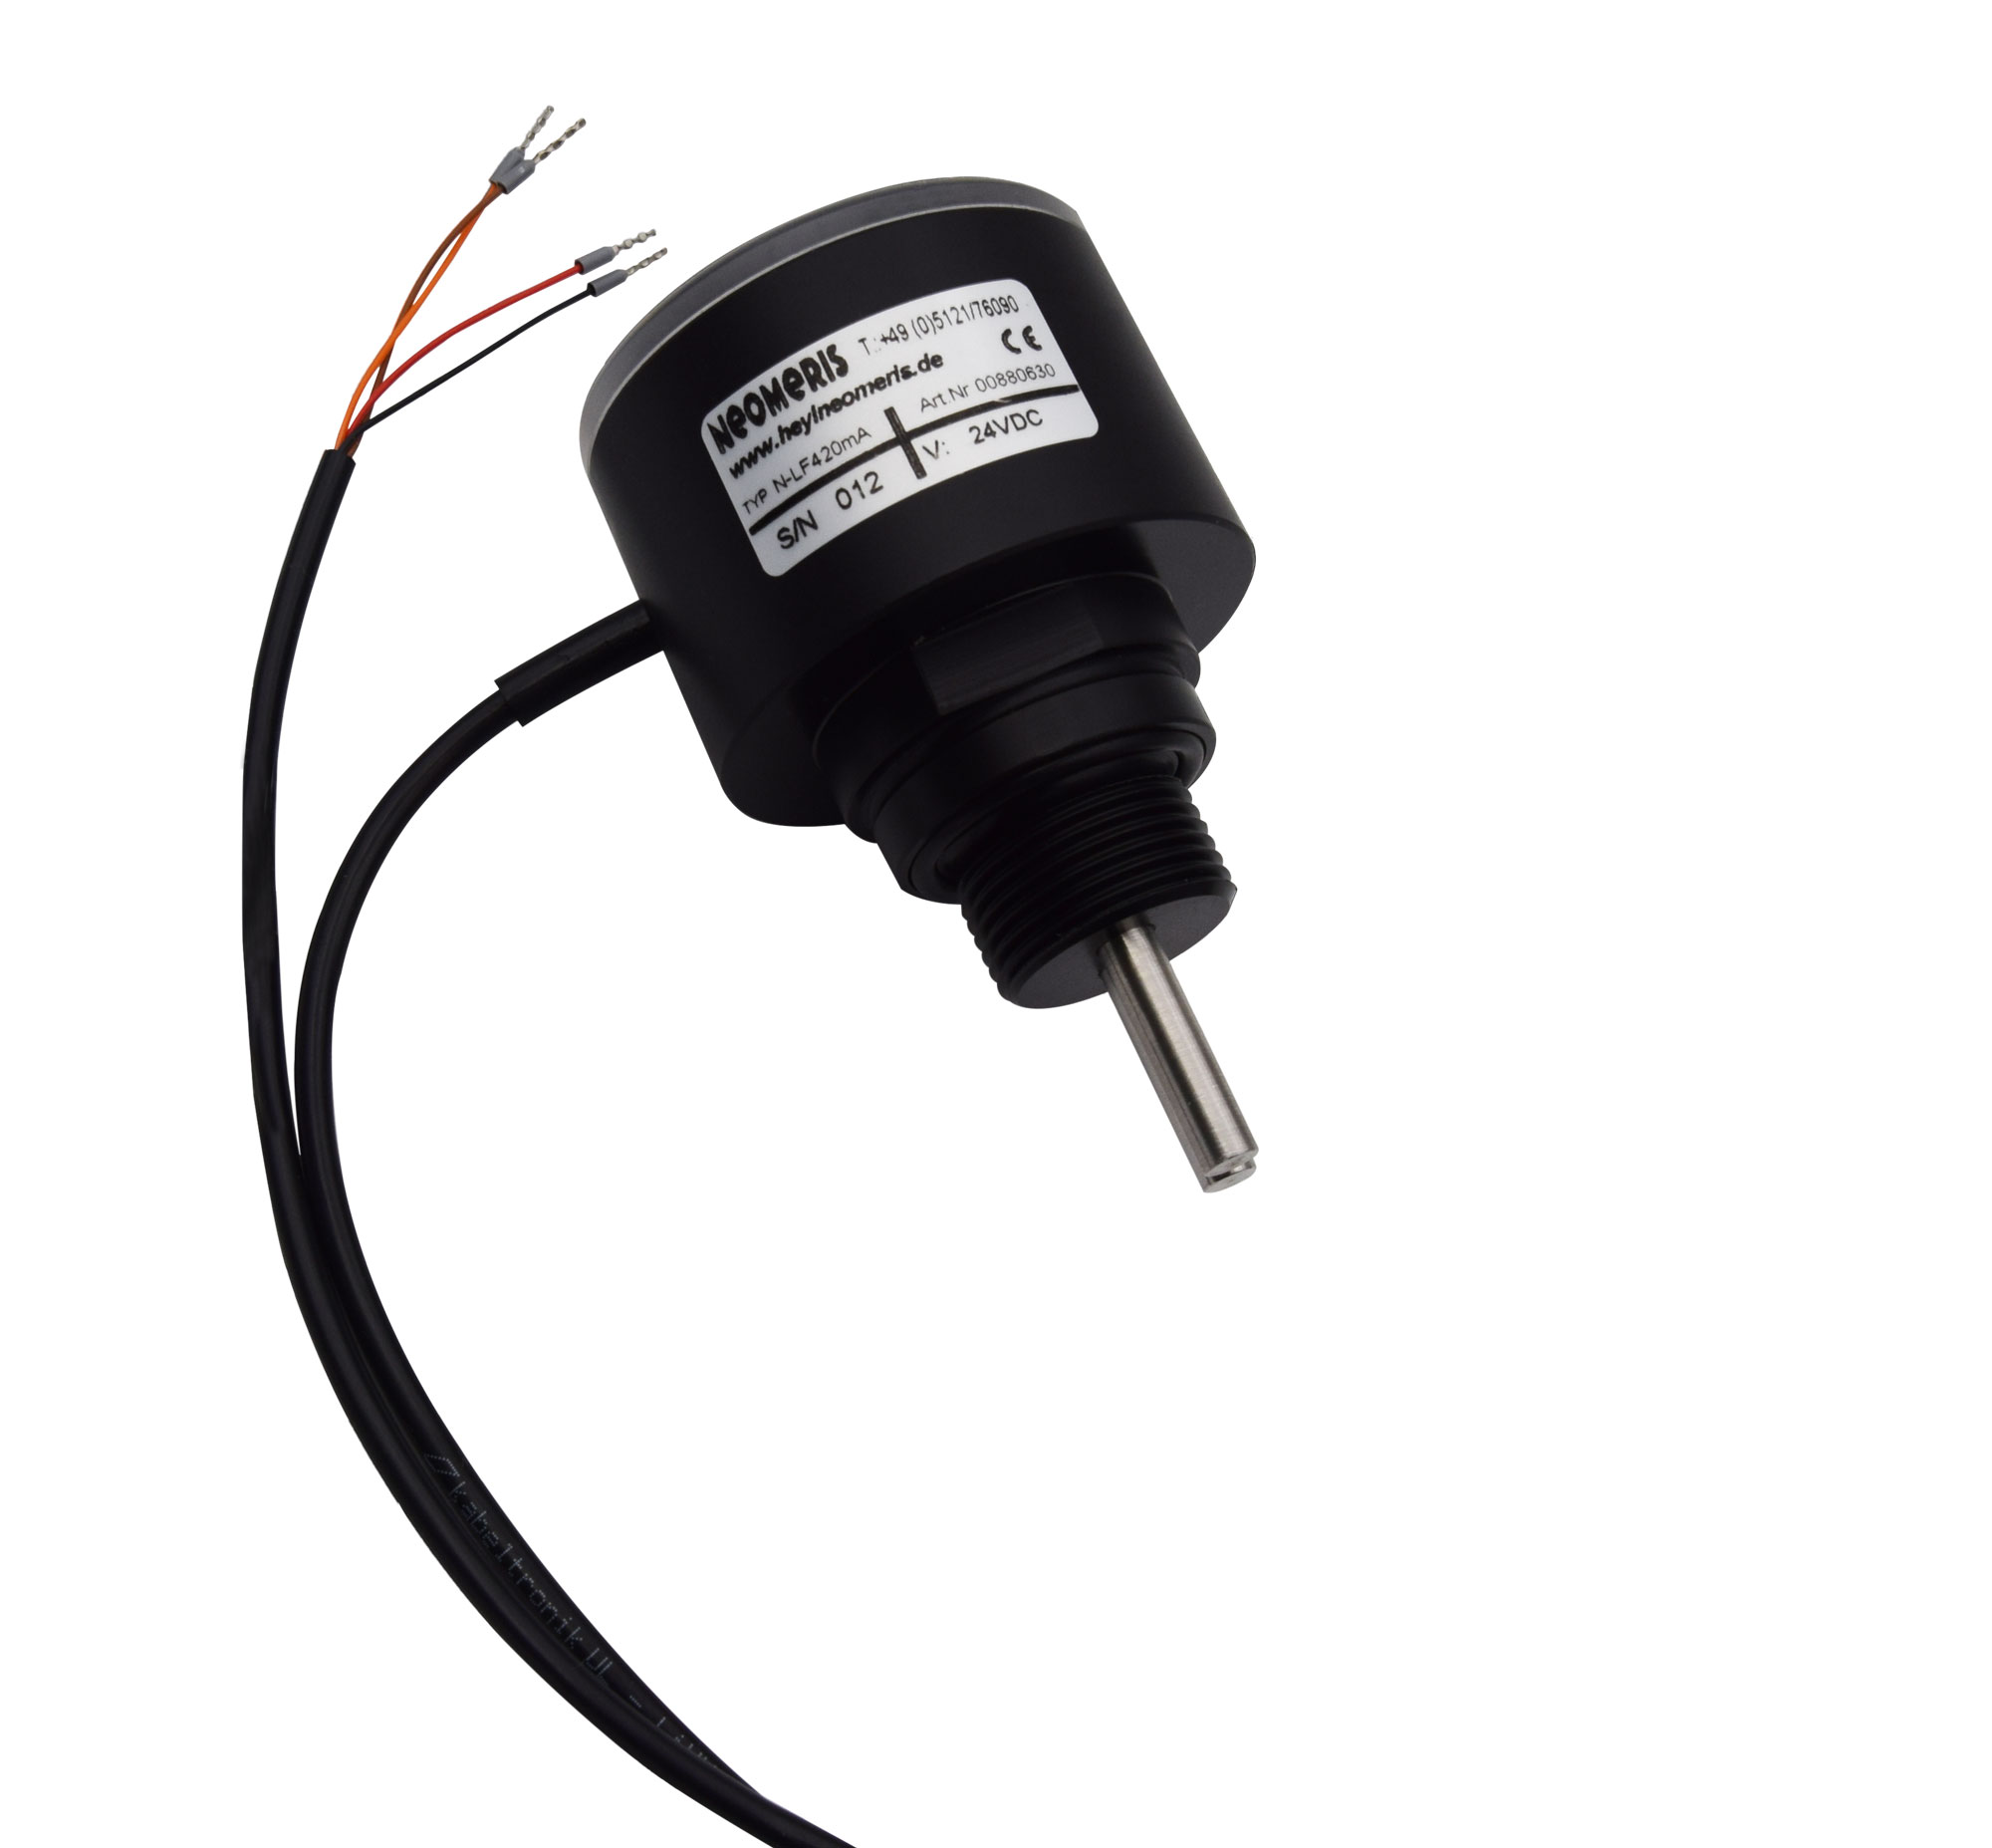 N-LF420 Leitfähigkeitsmessgerät mit 4-20mA Ausgang, Messbereich, LED Anzeige und Einschraubgewinde gemäß Ihren Anforderungen